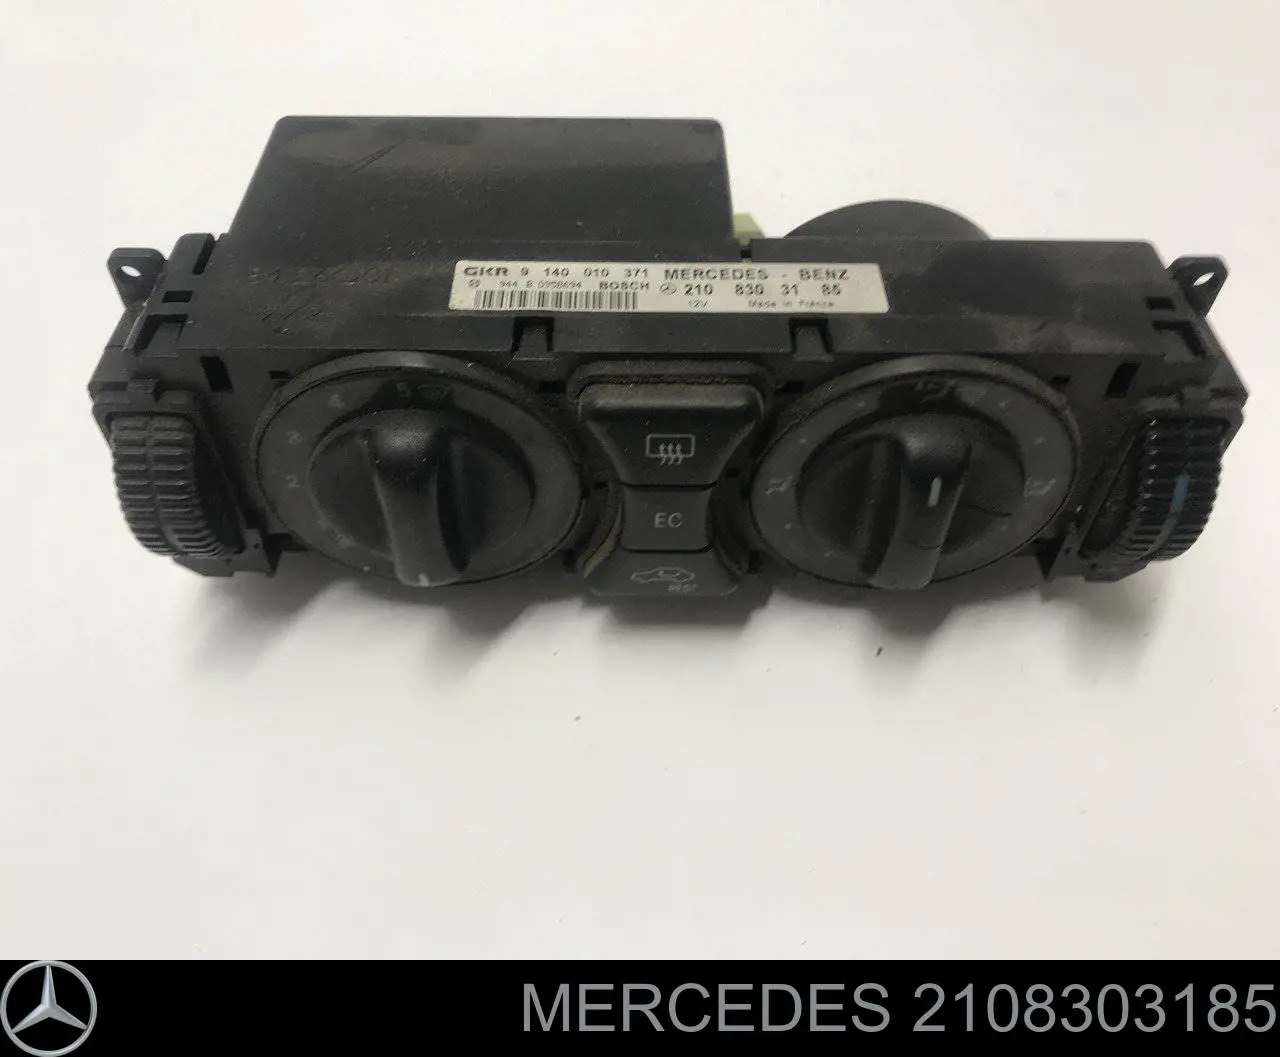 2108303185 Mercedes блок управления режимами отопления/кондиционирования